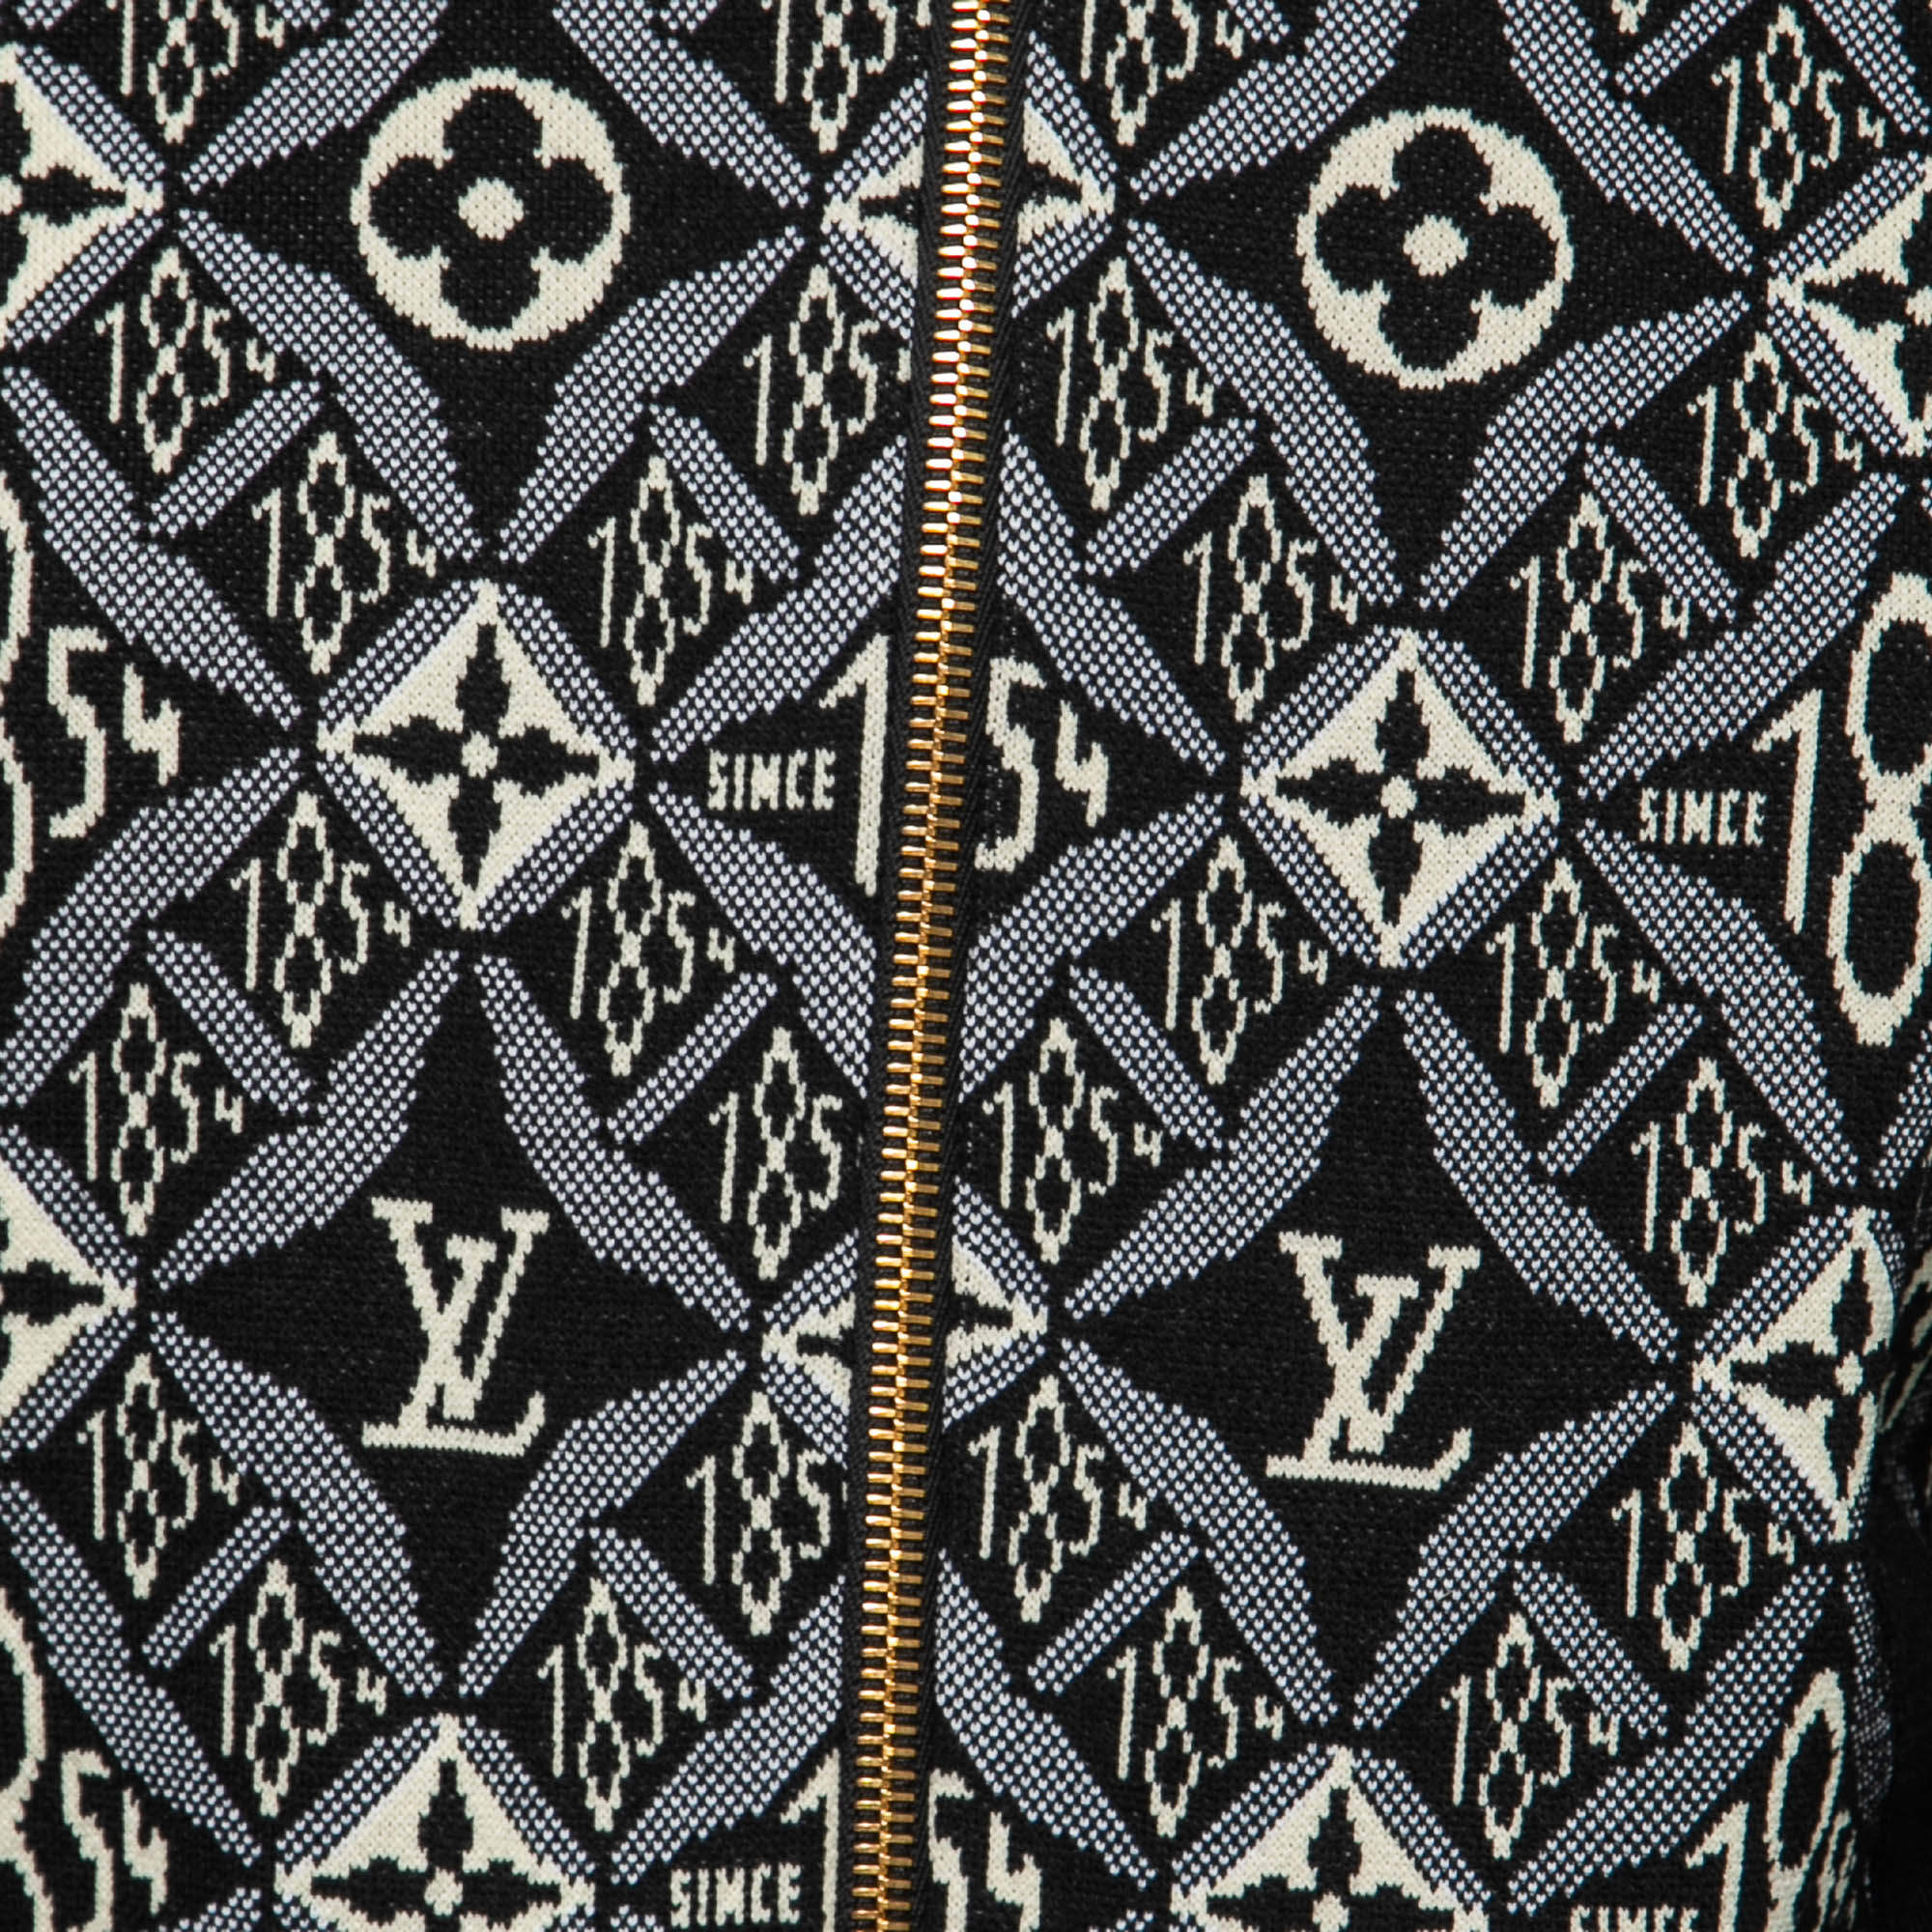 Louis Vuitton Black Since 1854 Monogram Knit Bomber Jacket XS Louis Vuitton